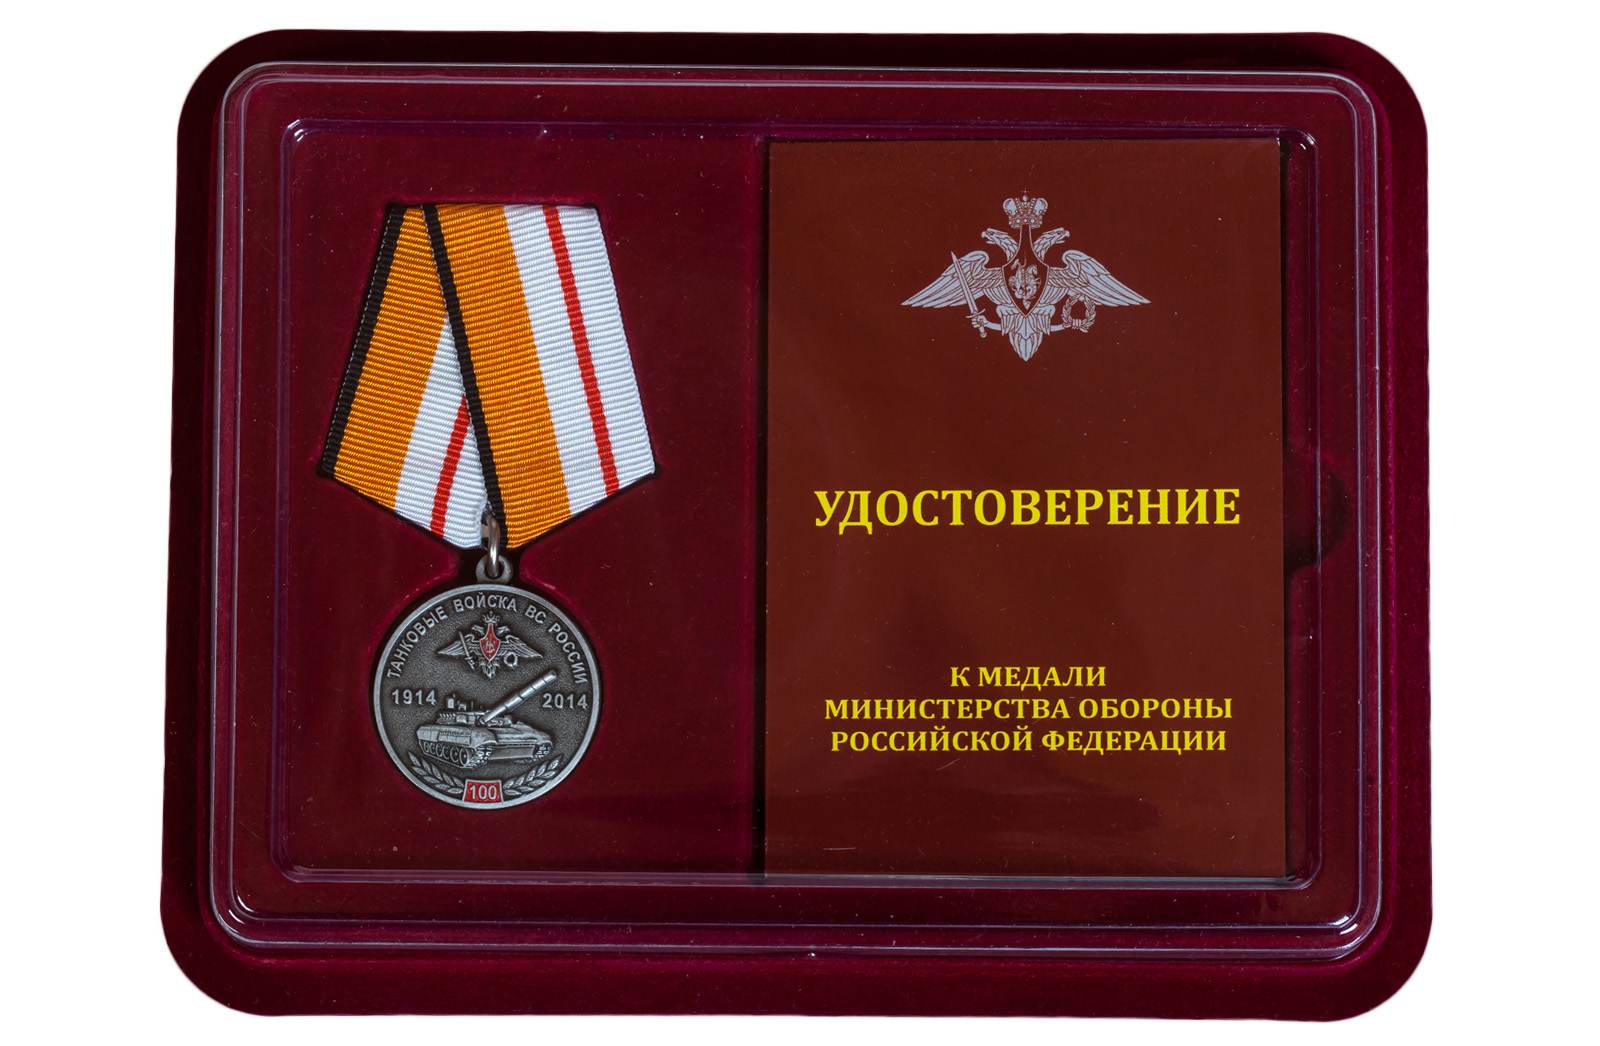 Купить медаль 100 лет Танковым войскам МО РФ оптом или в розницу